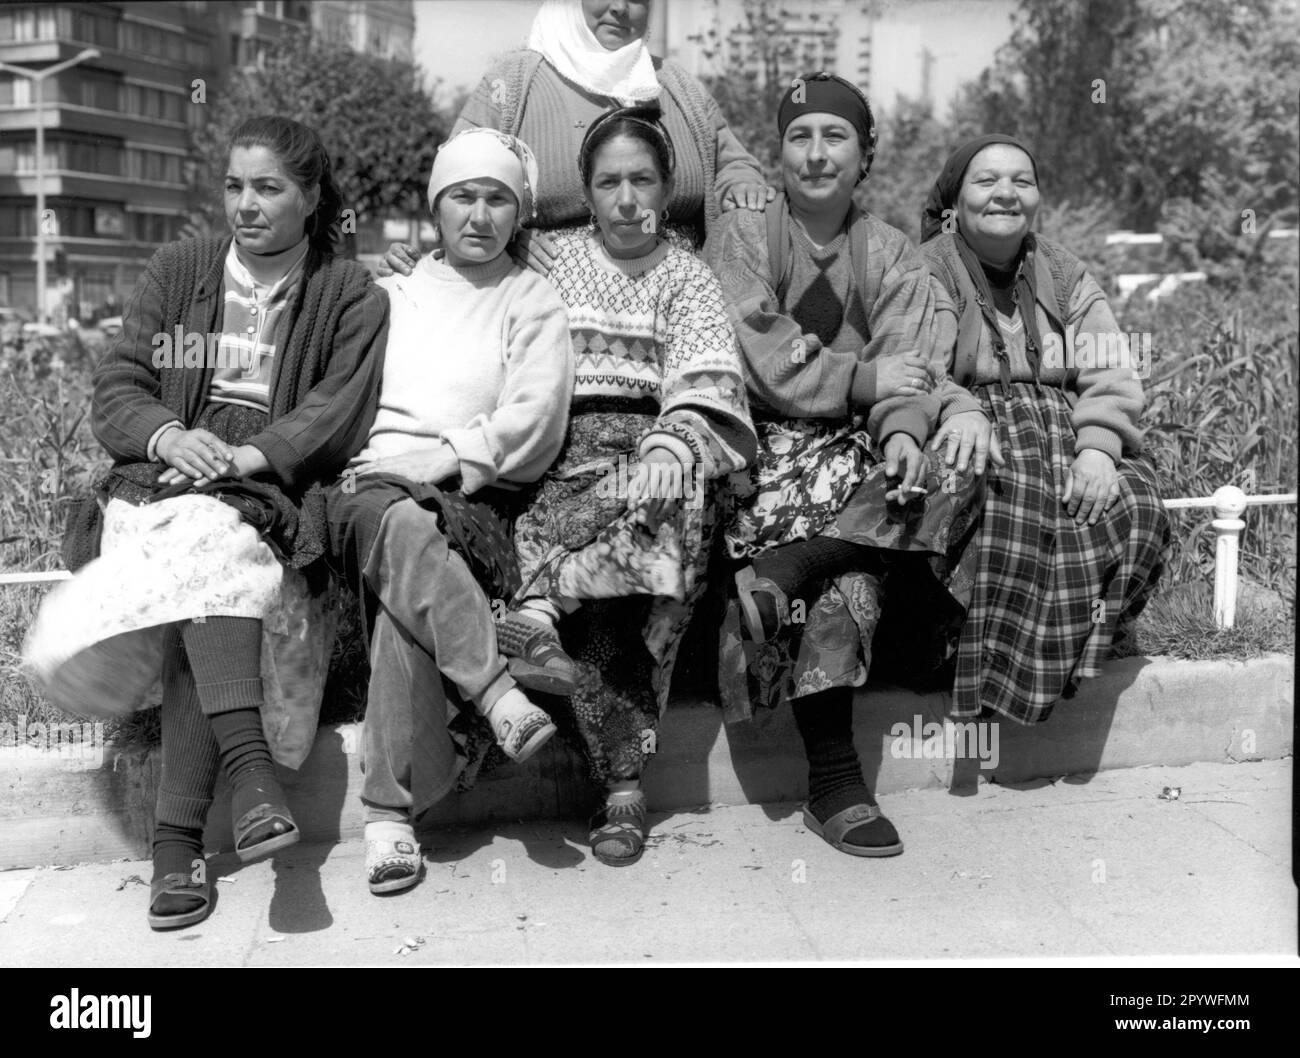 Ethnologie: Turquie. Fleurir des femmes de la place Taksim à Istanbul (district de Beyoglu). Scène de rue, noir et blanc. Photo, 1994. Banque D'Images